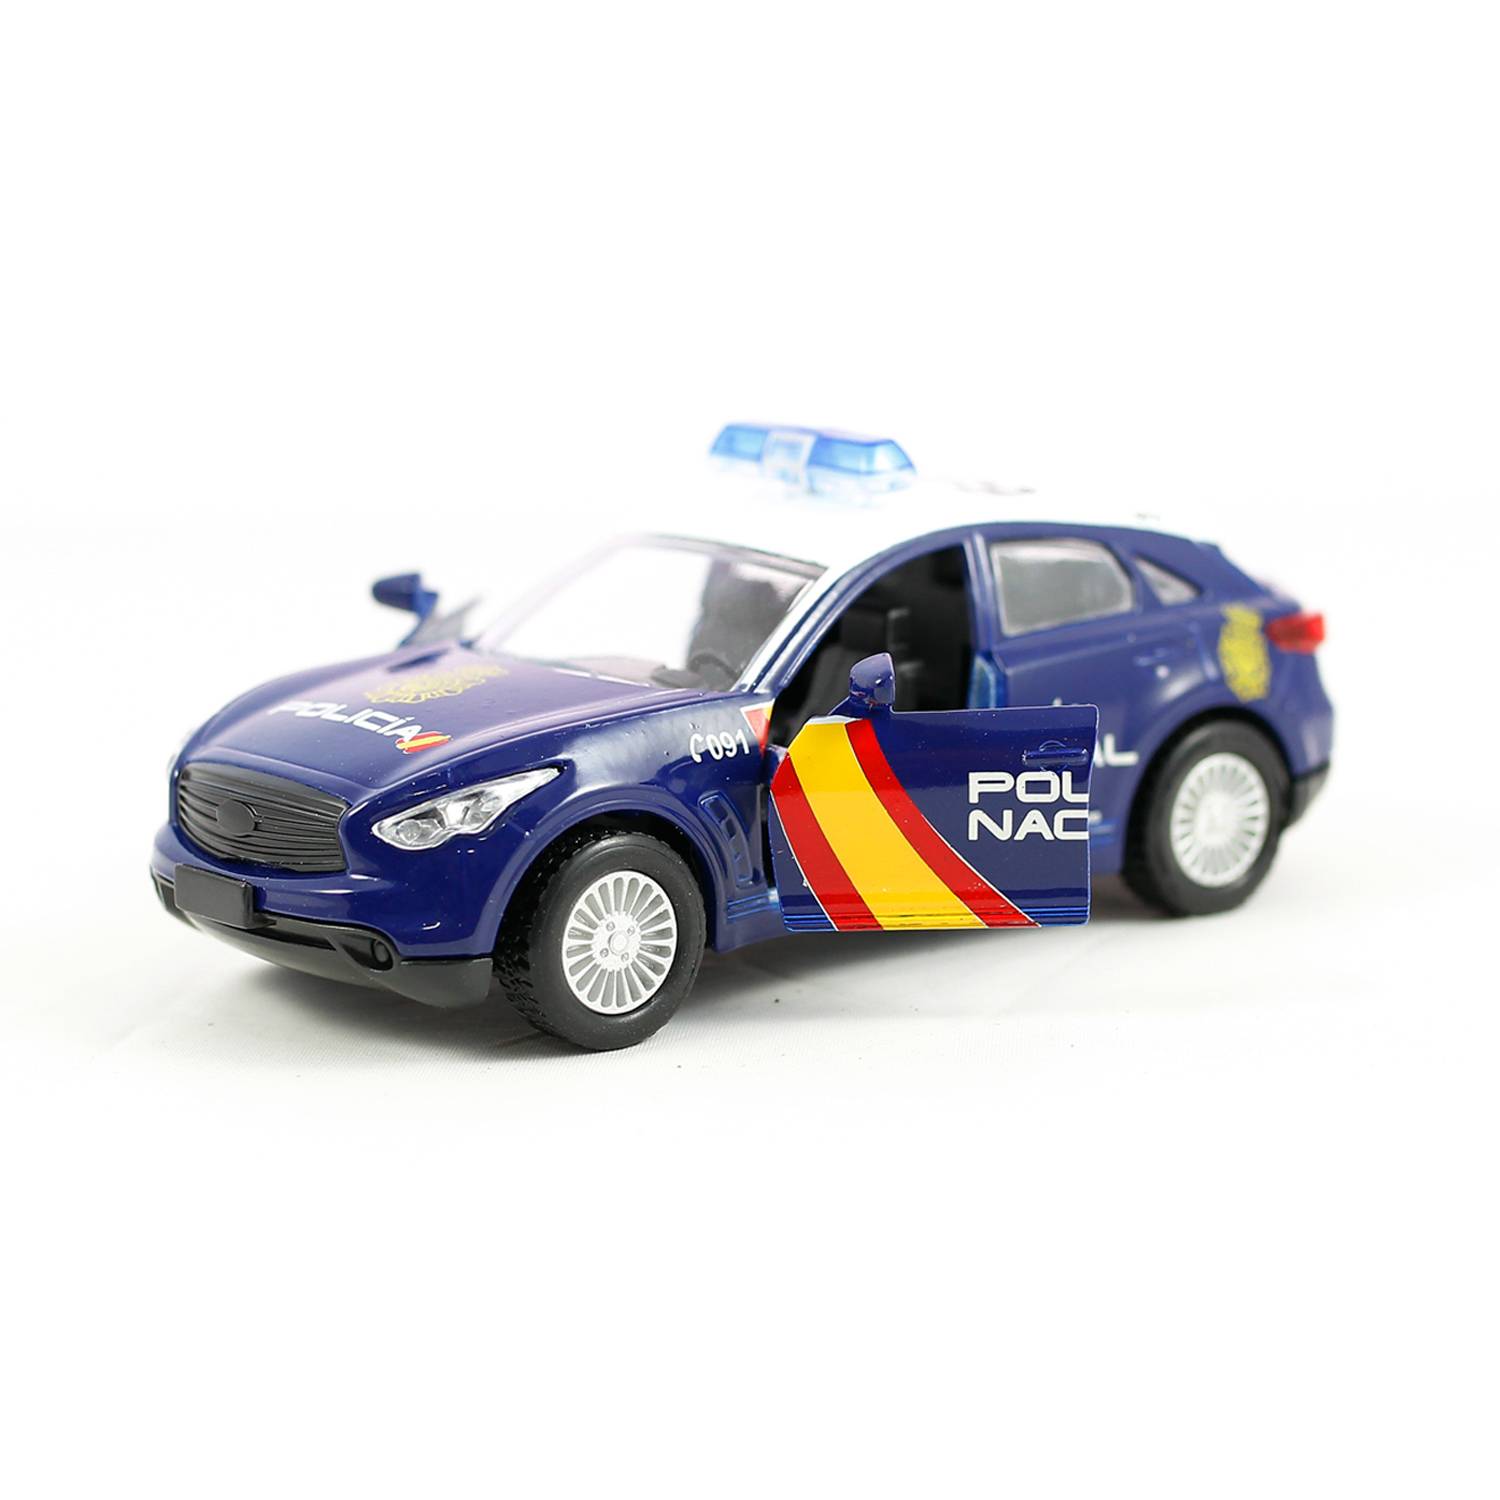 Miniatura coche Policía Nacional GT-0233 - Kilumio